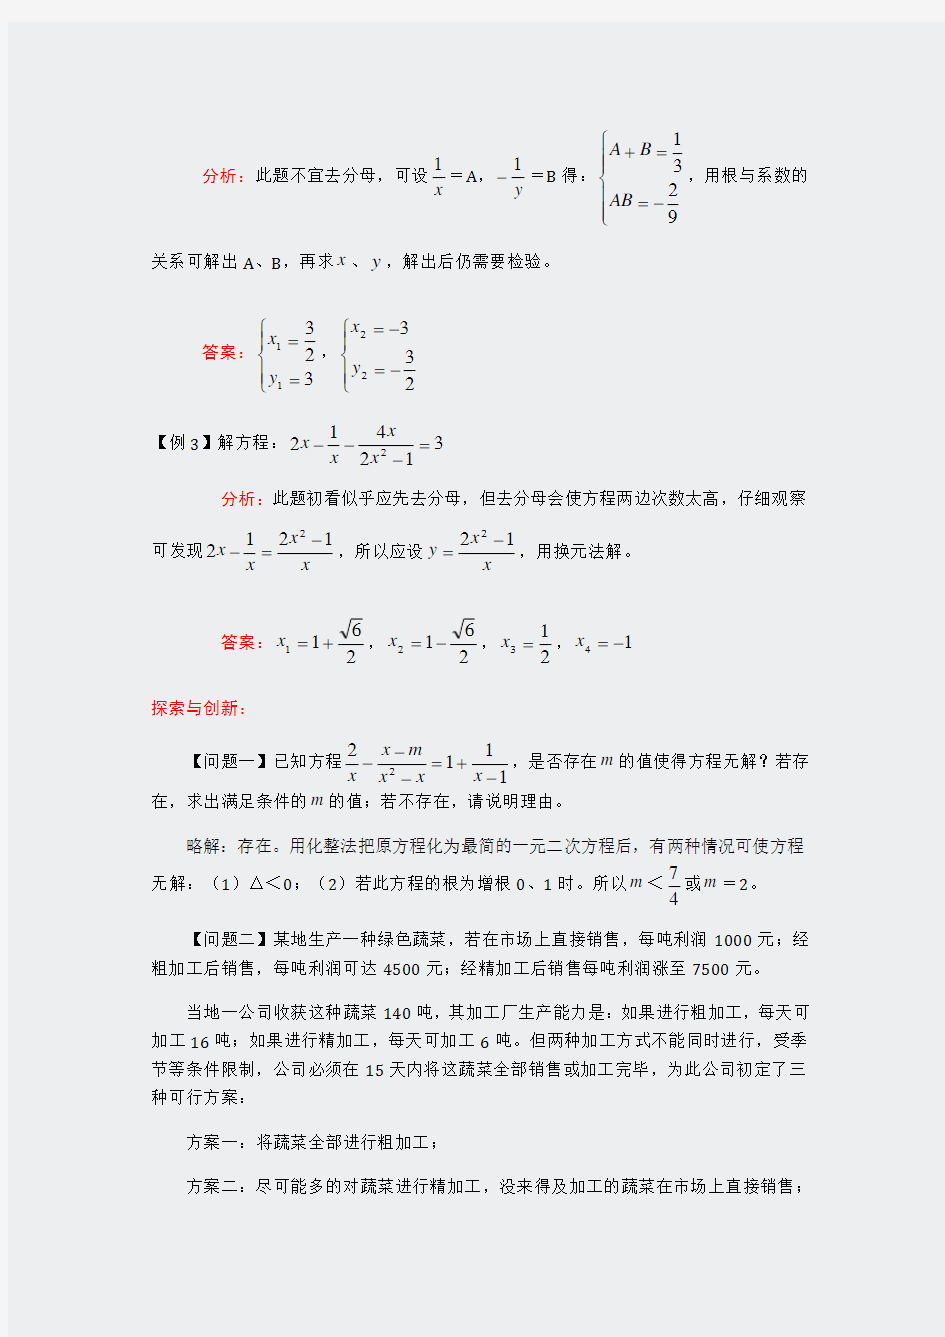 2013中考数学精选例题解析分式方程